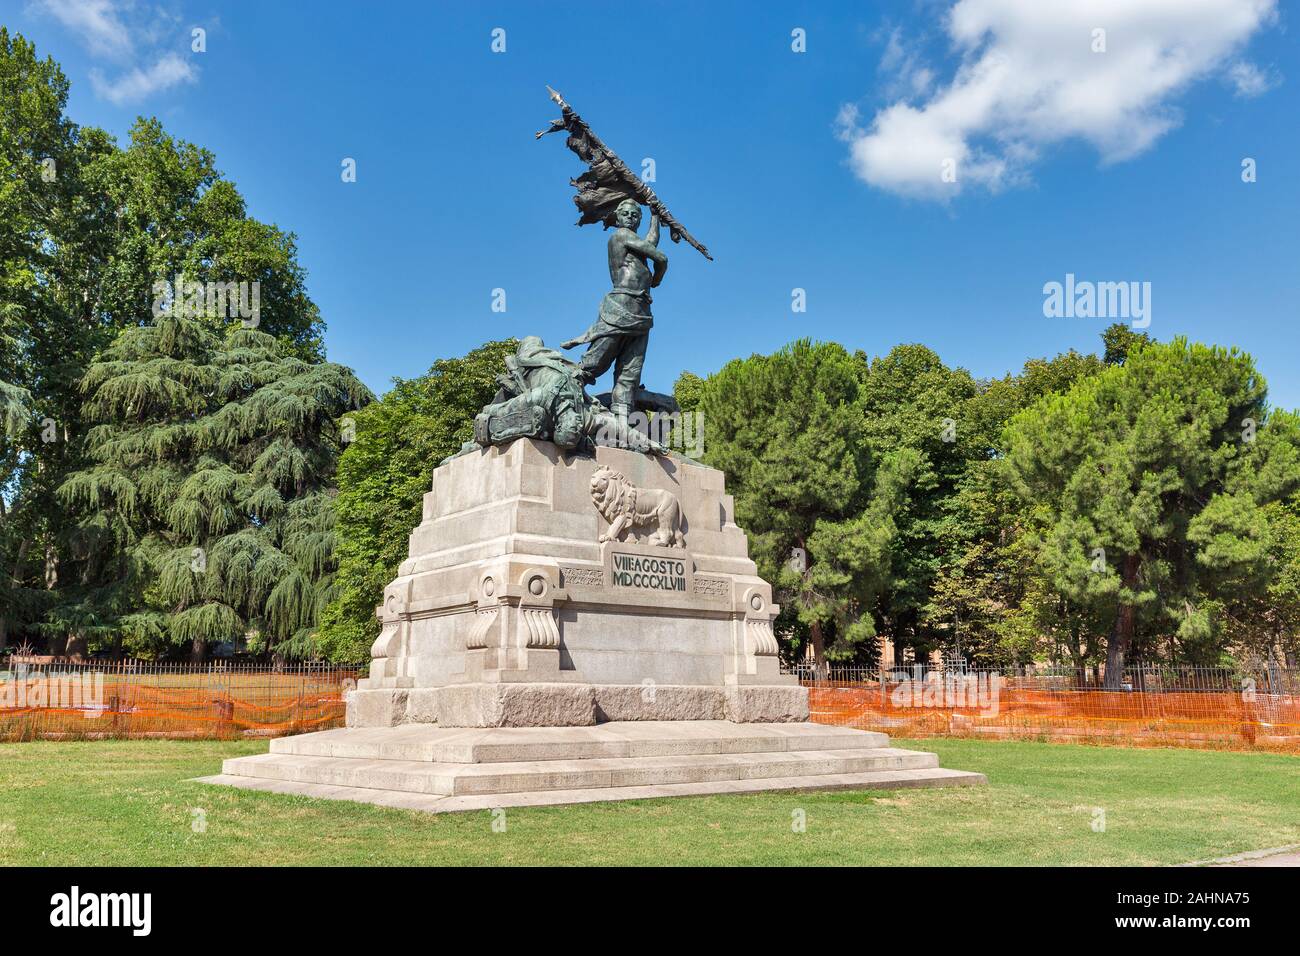 Monument aux morts le 8 août 1848 dans la guerre contre l'Autriche. Bologne, Italie. Banque D'Images